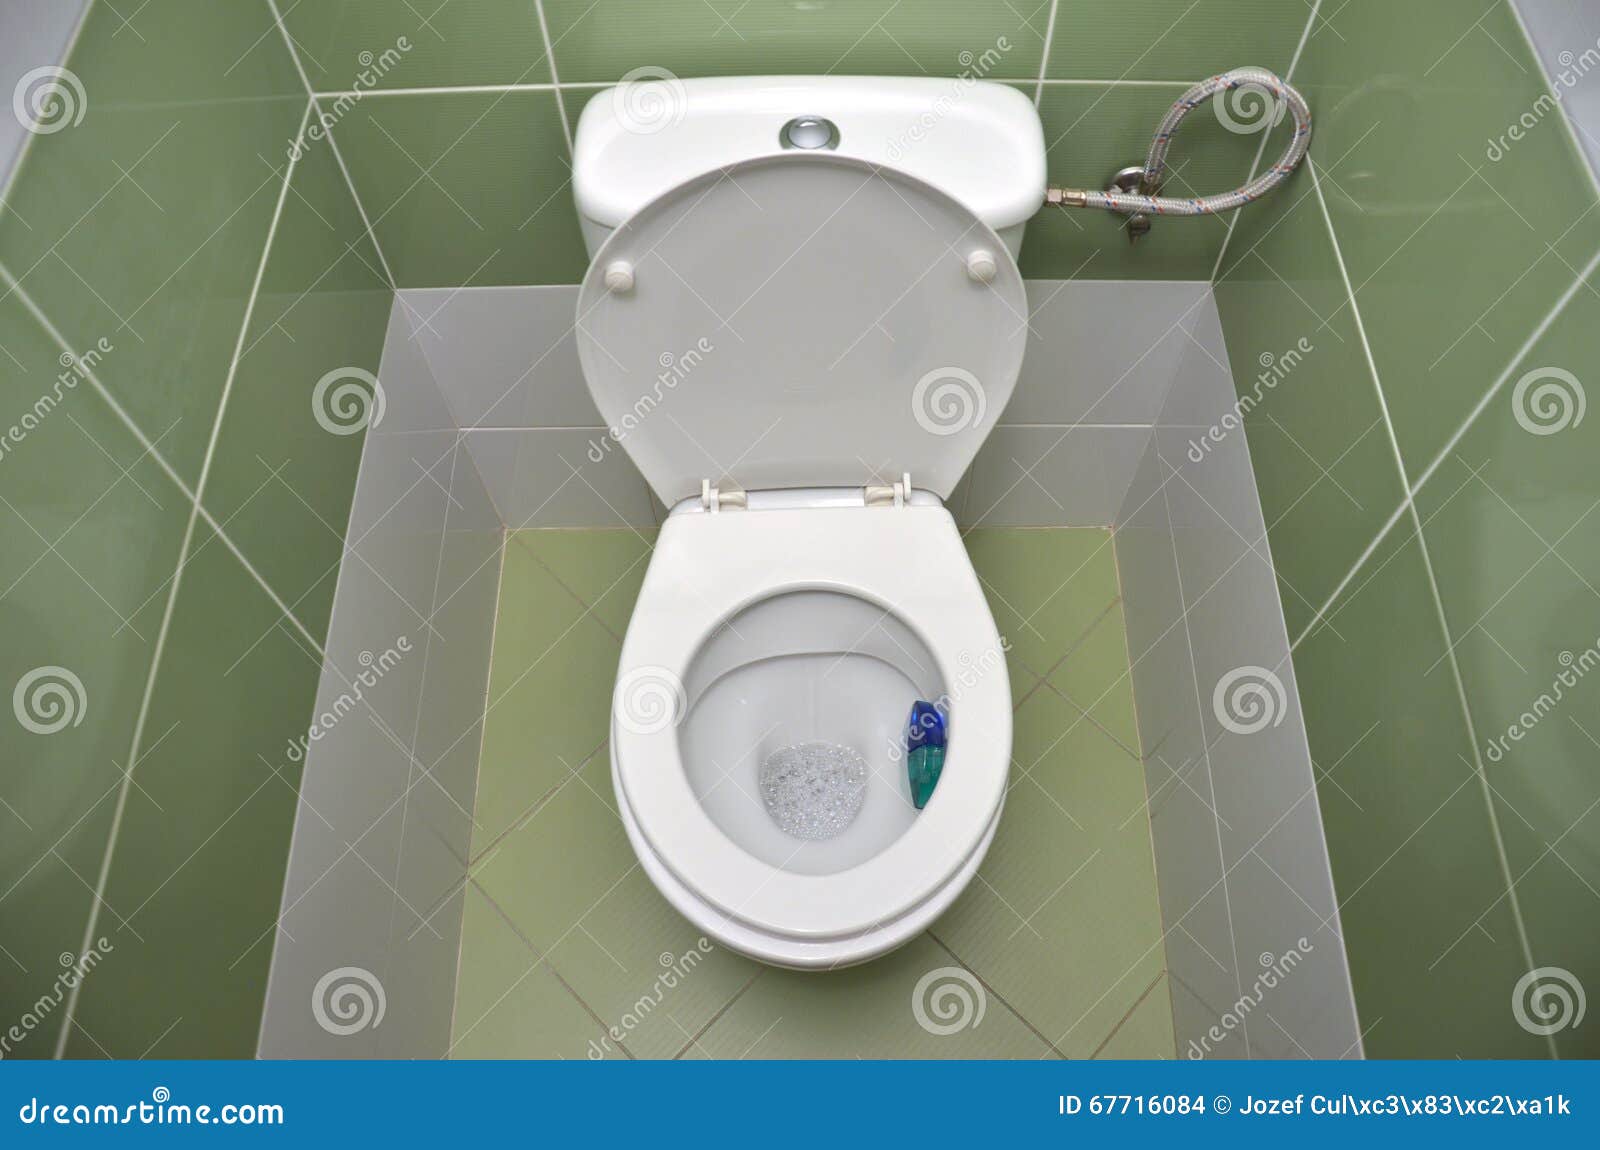 Туалет открытый мир читы. Туалет открытый. Обои в туалет. Открытый унитаз обои. Туалет на зелёном фоне.